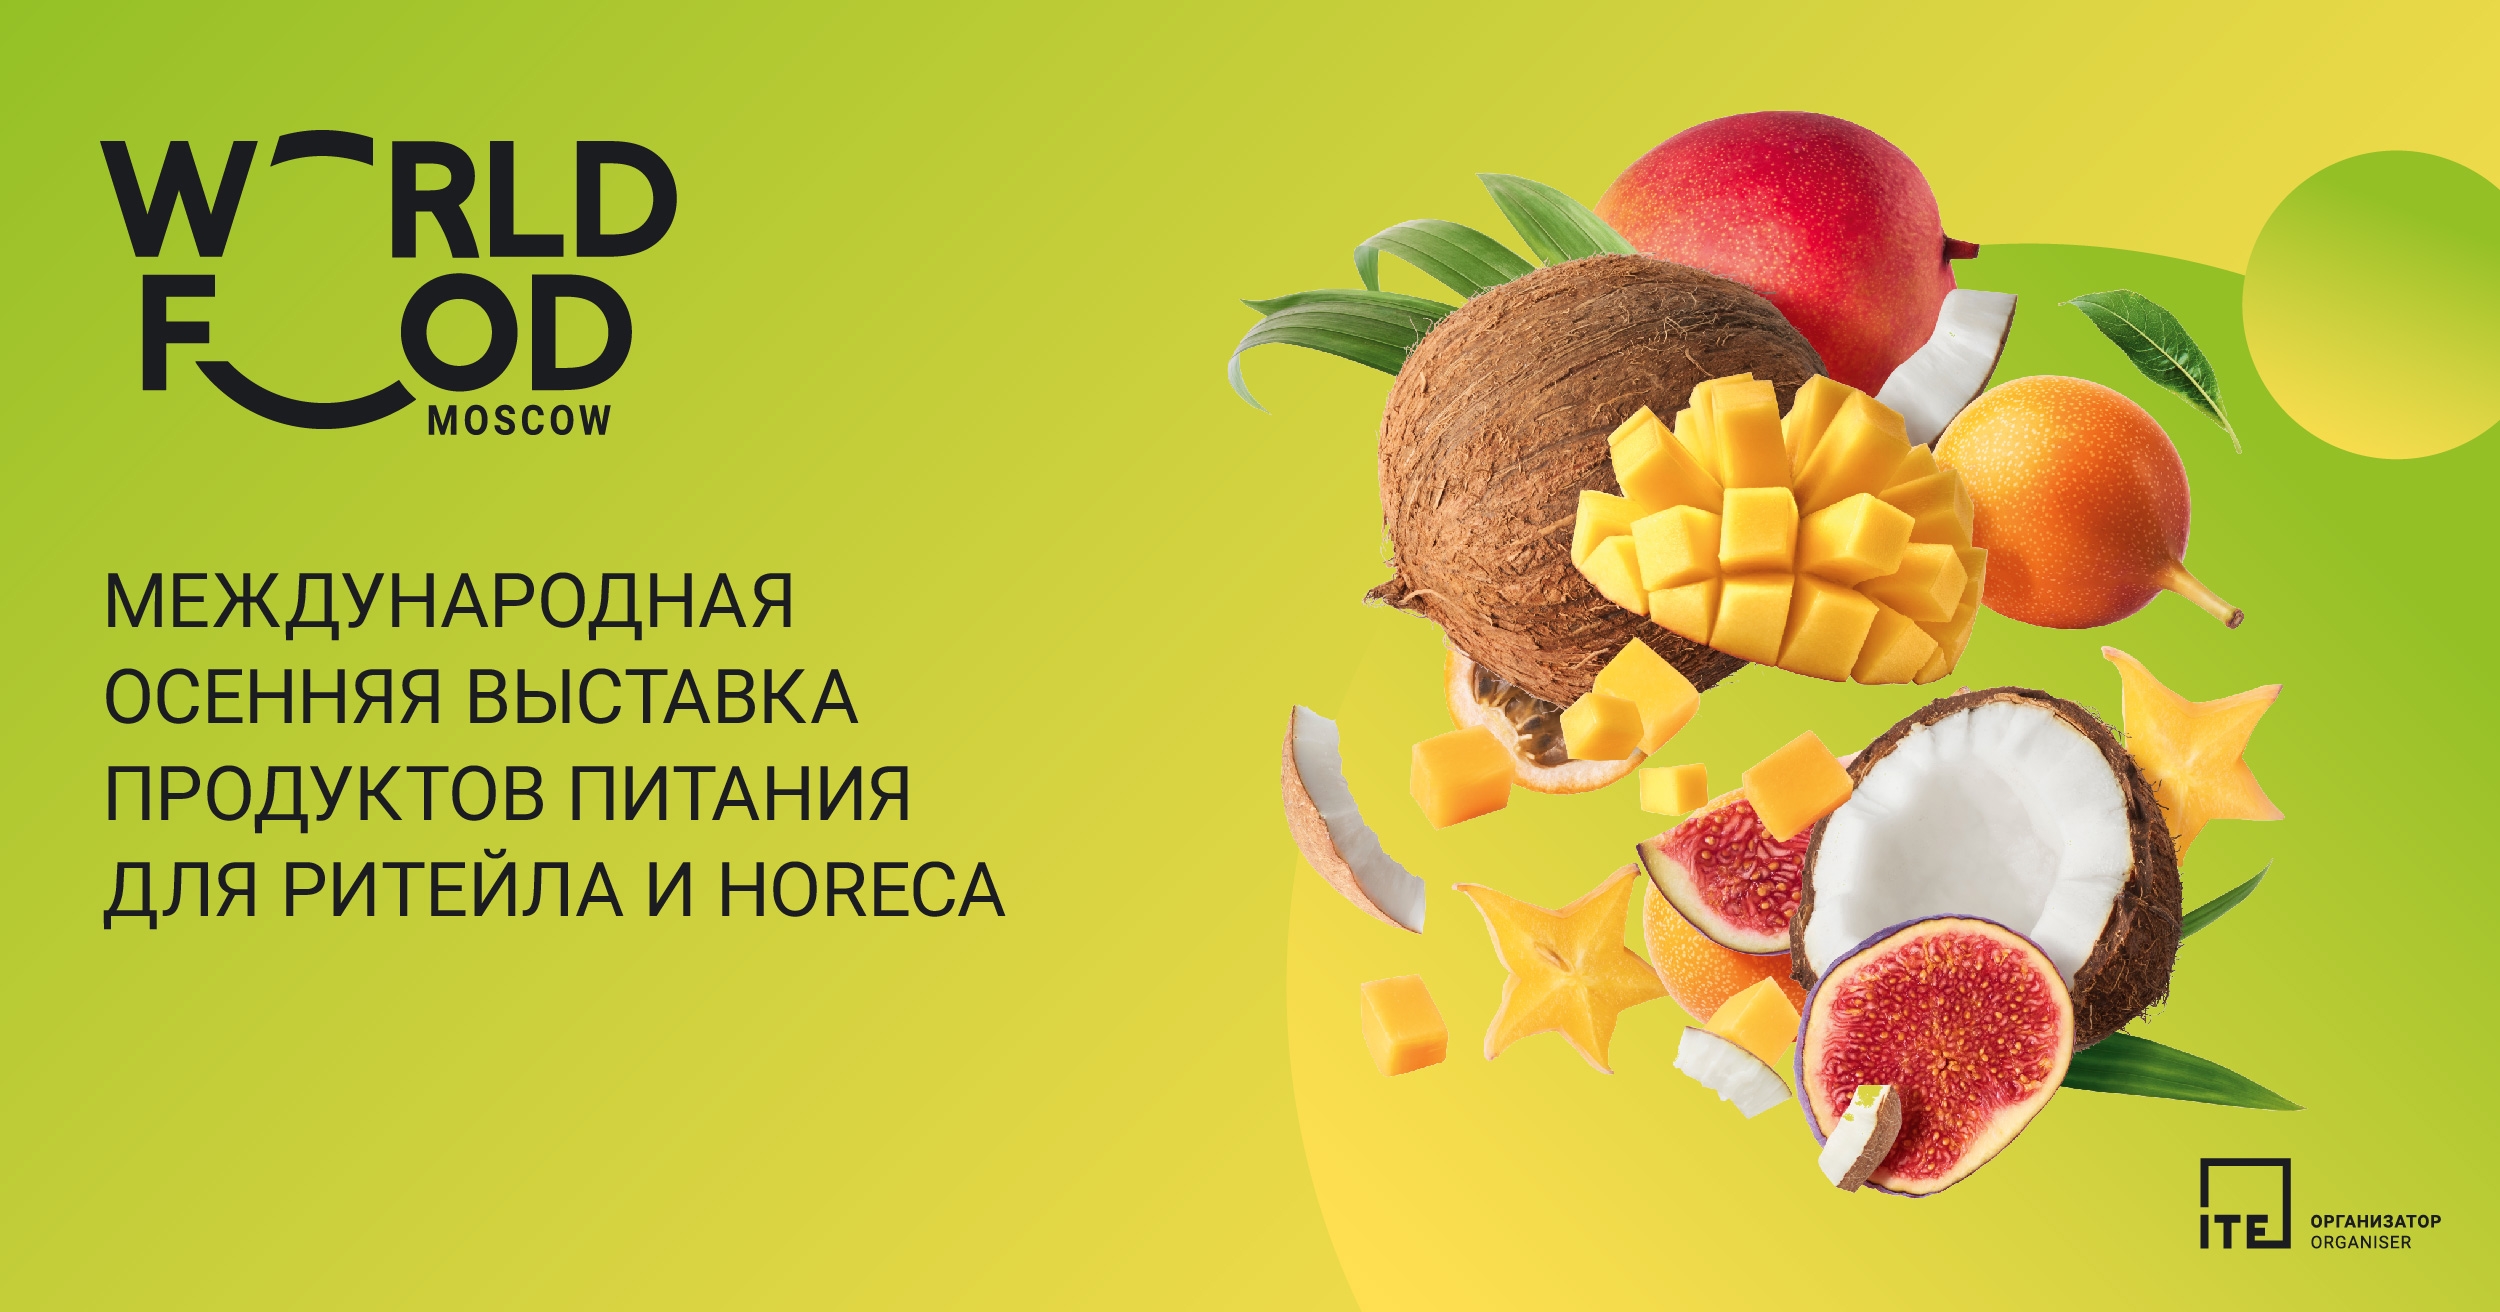 (c) World-food.ru